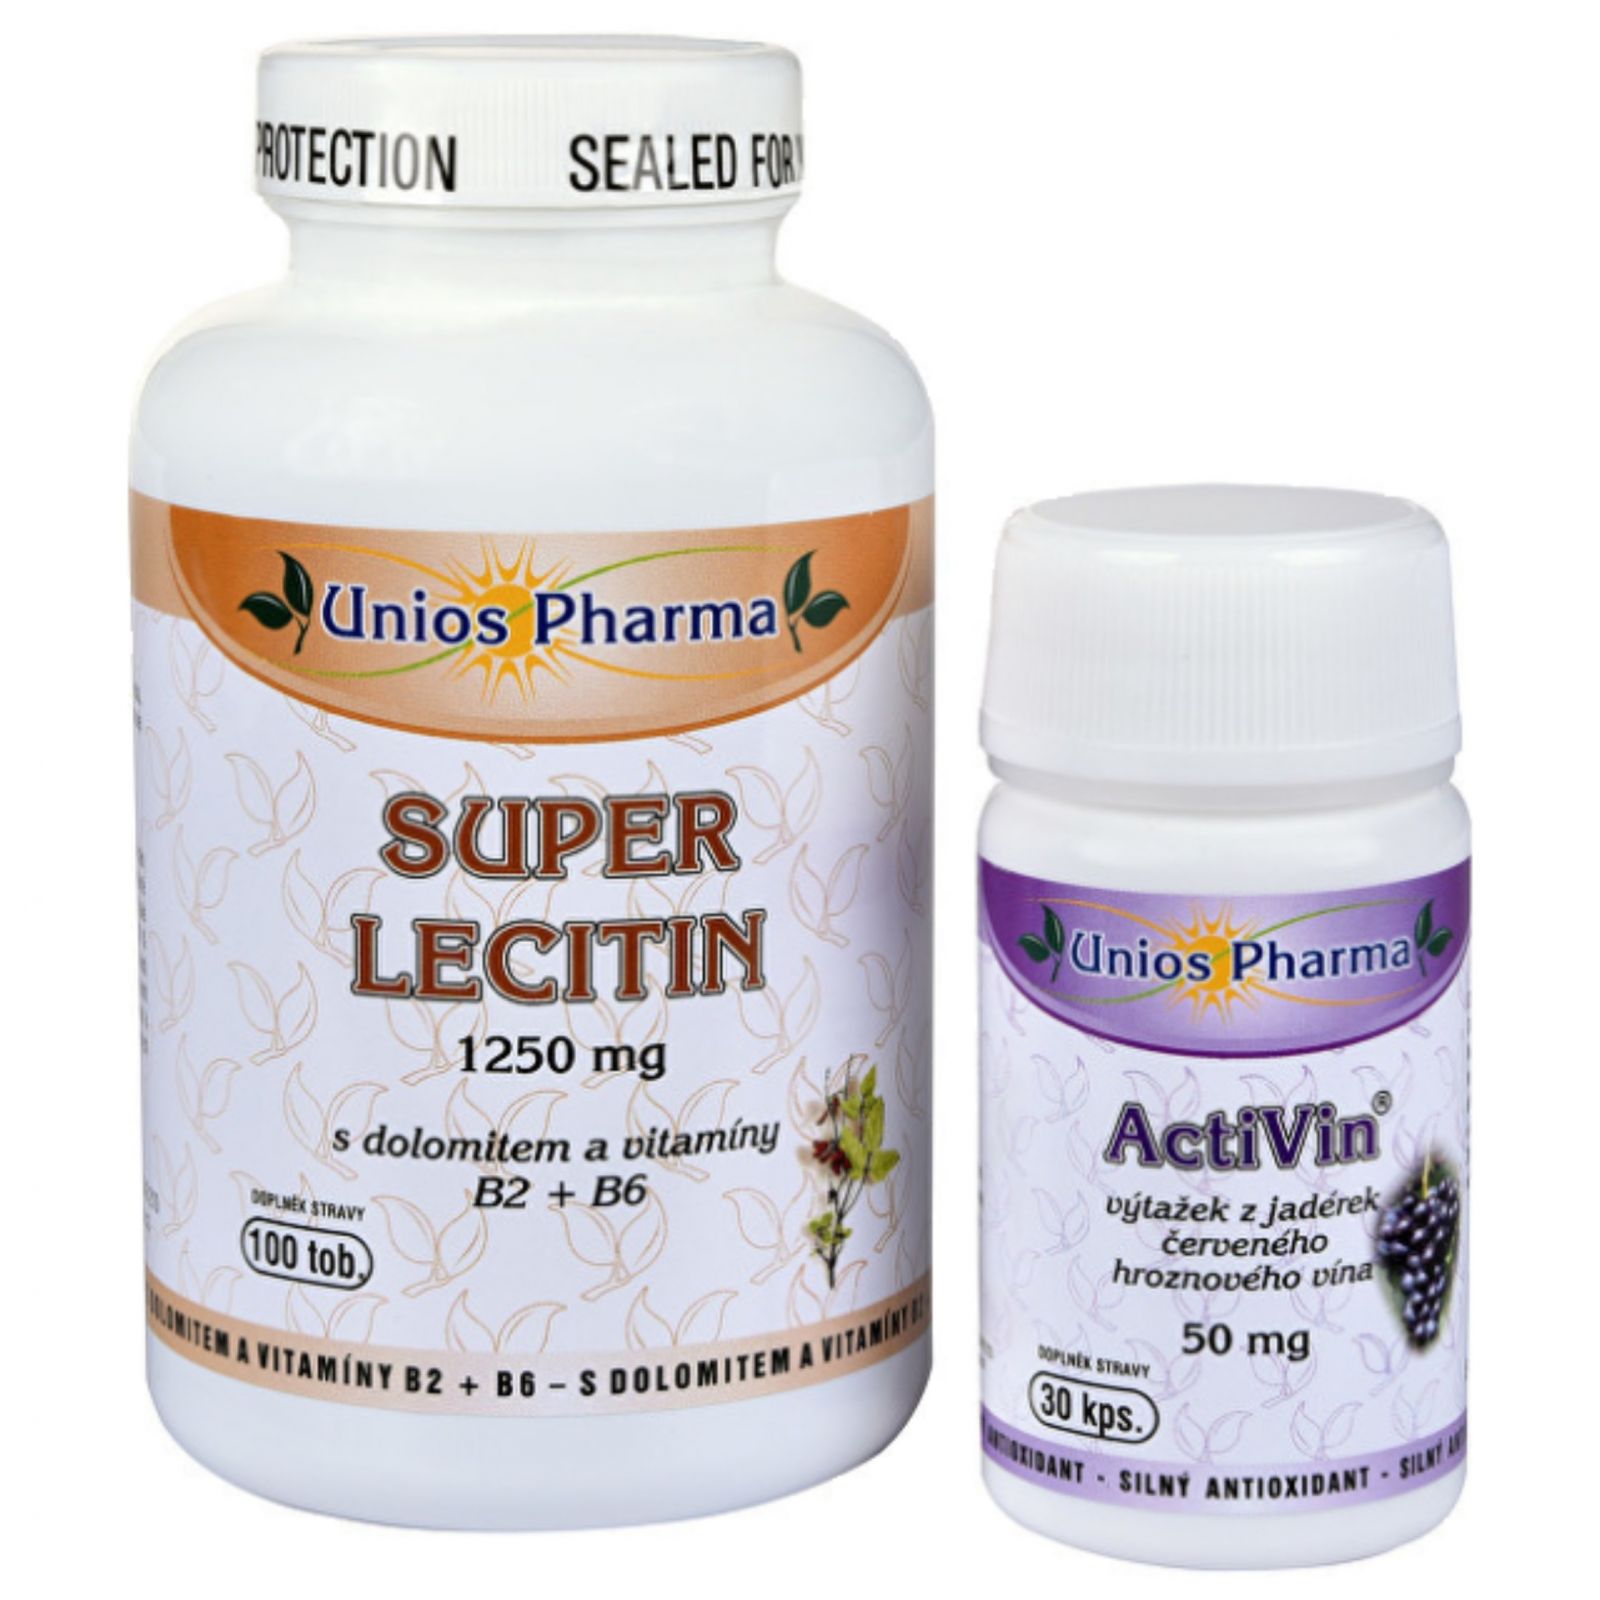 Unios Pharma Super Lecithin 100 Kapseln + Activin 30 Kapseln.